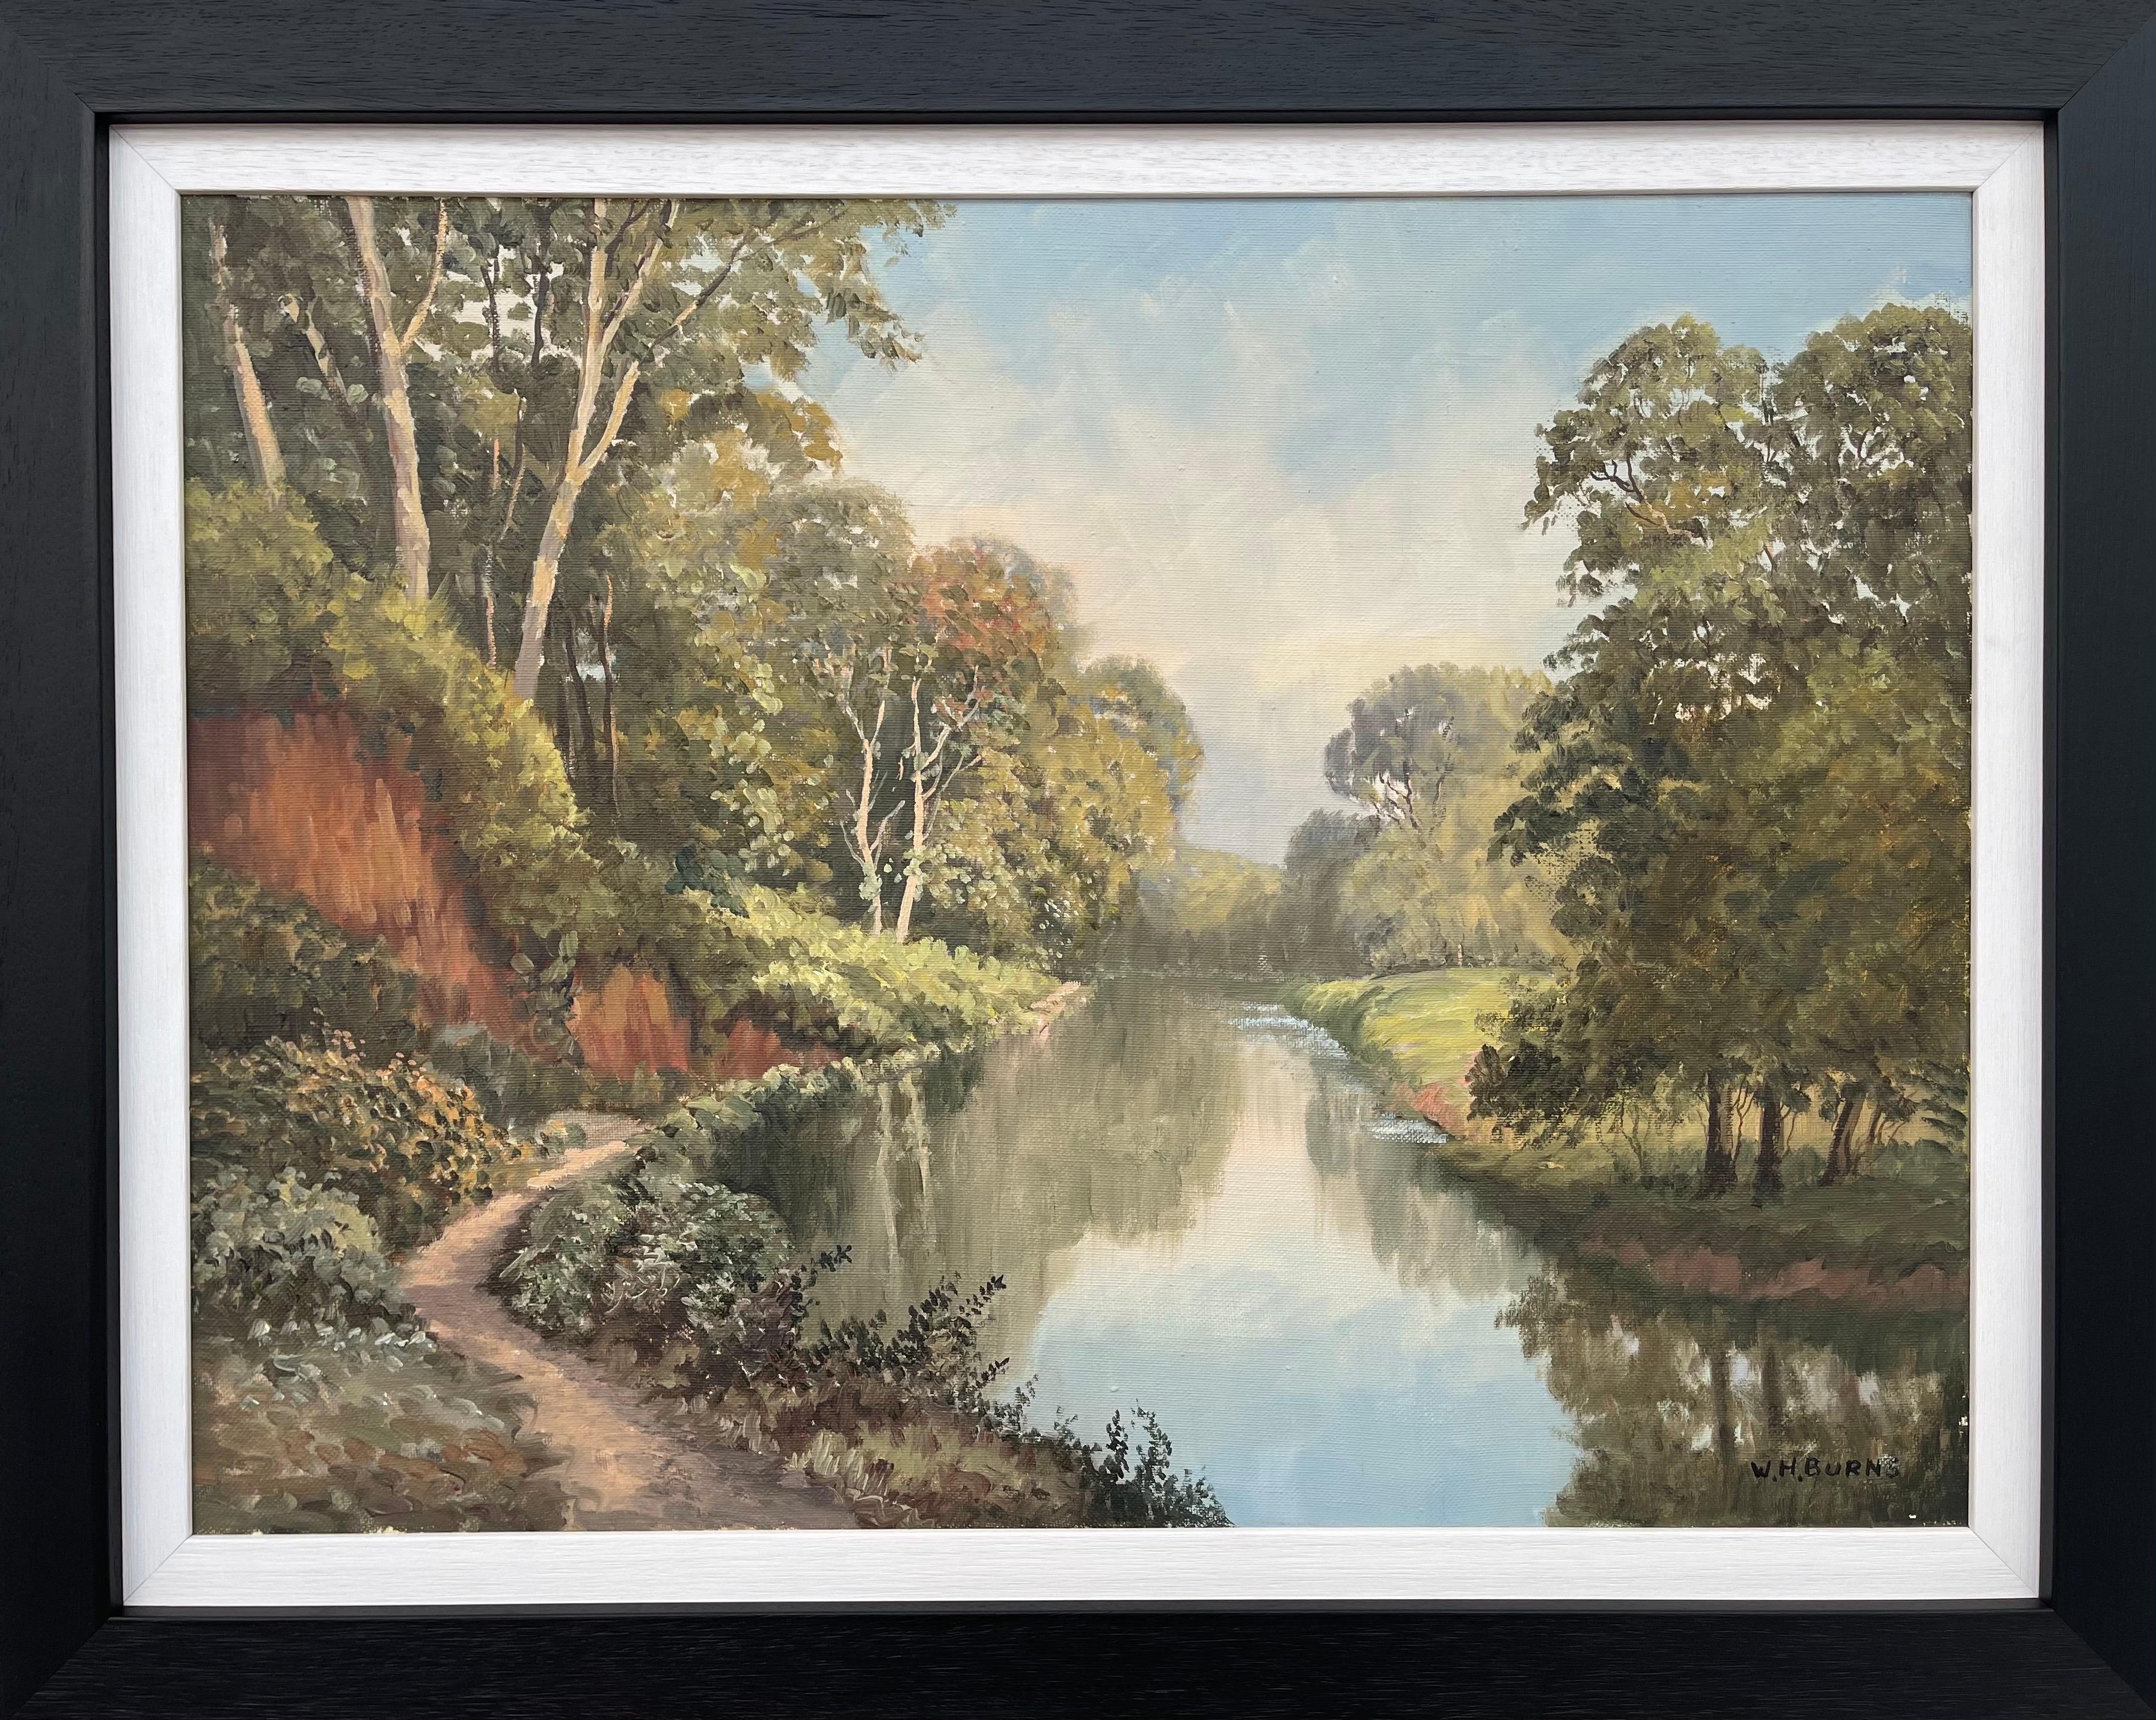 William Henry Burns Figurative Painting – Gemälde der Idyllic River Scene On the Lagan in Irland, moderner irischer Künstler 